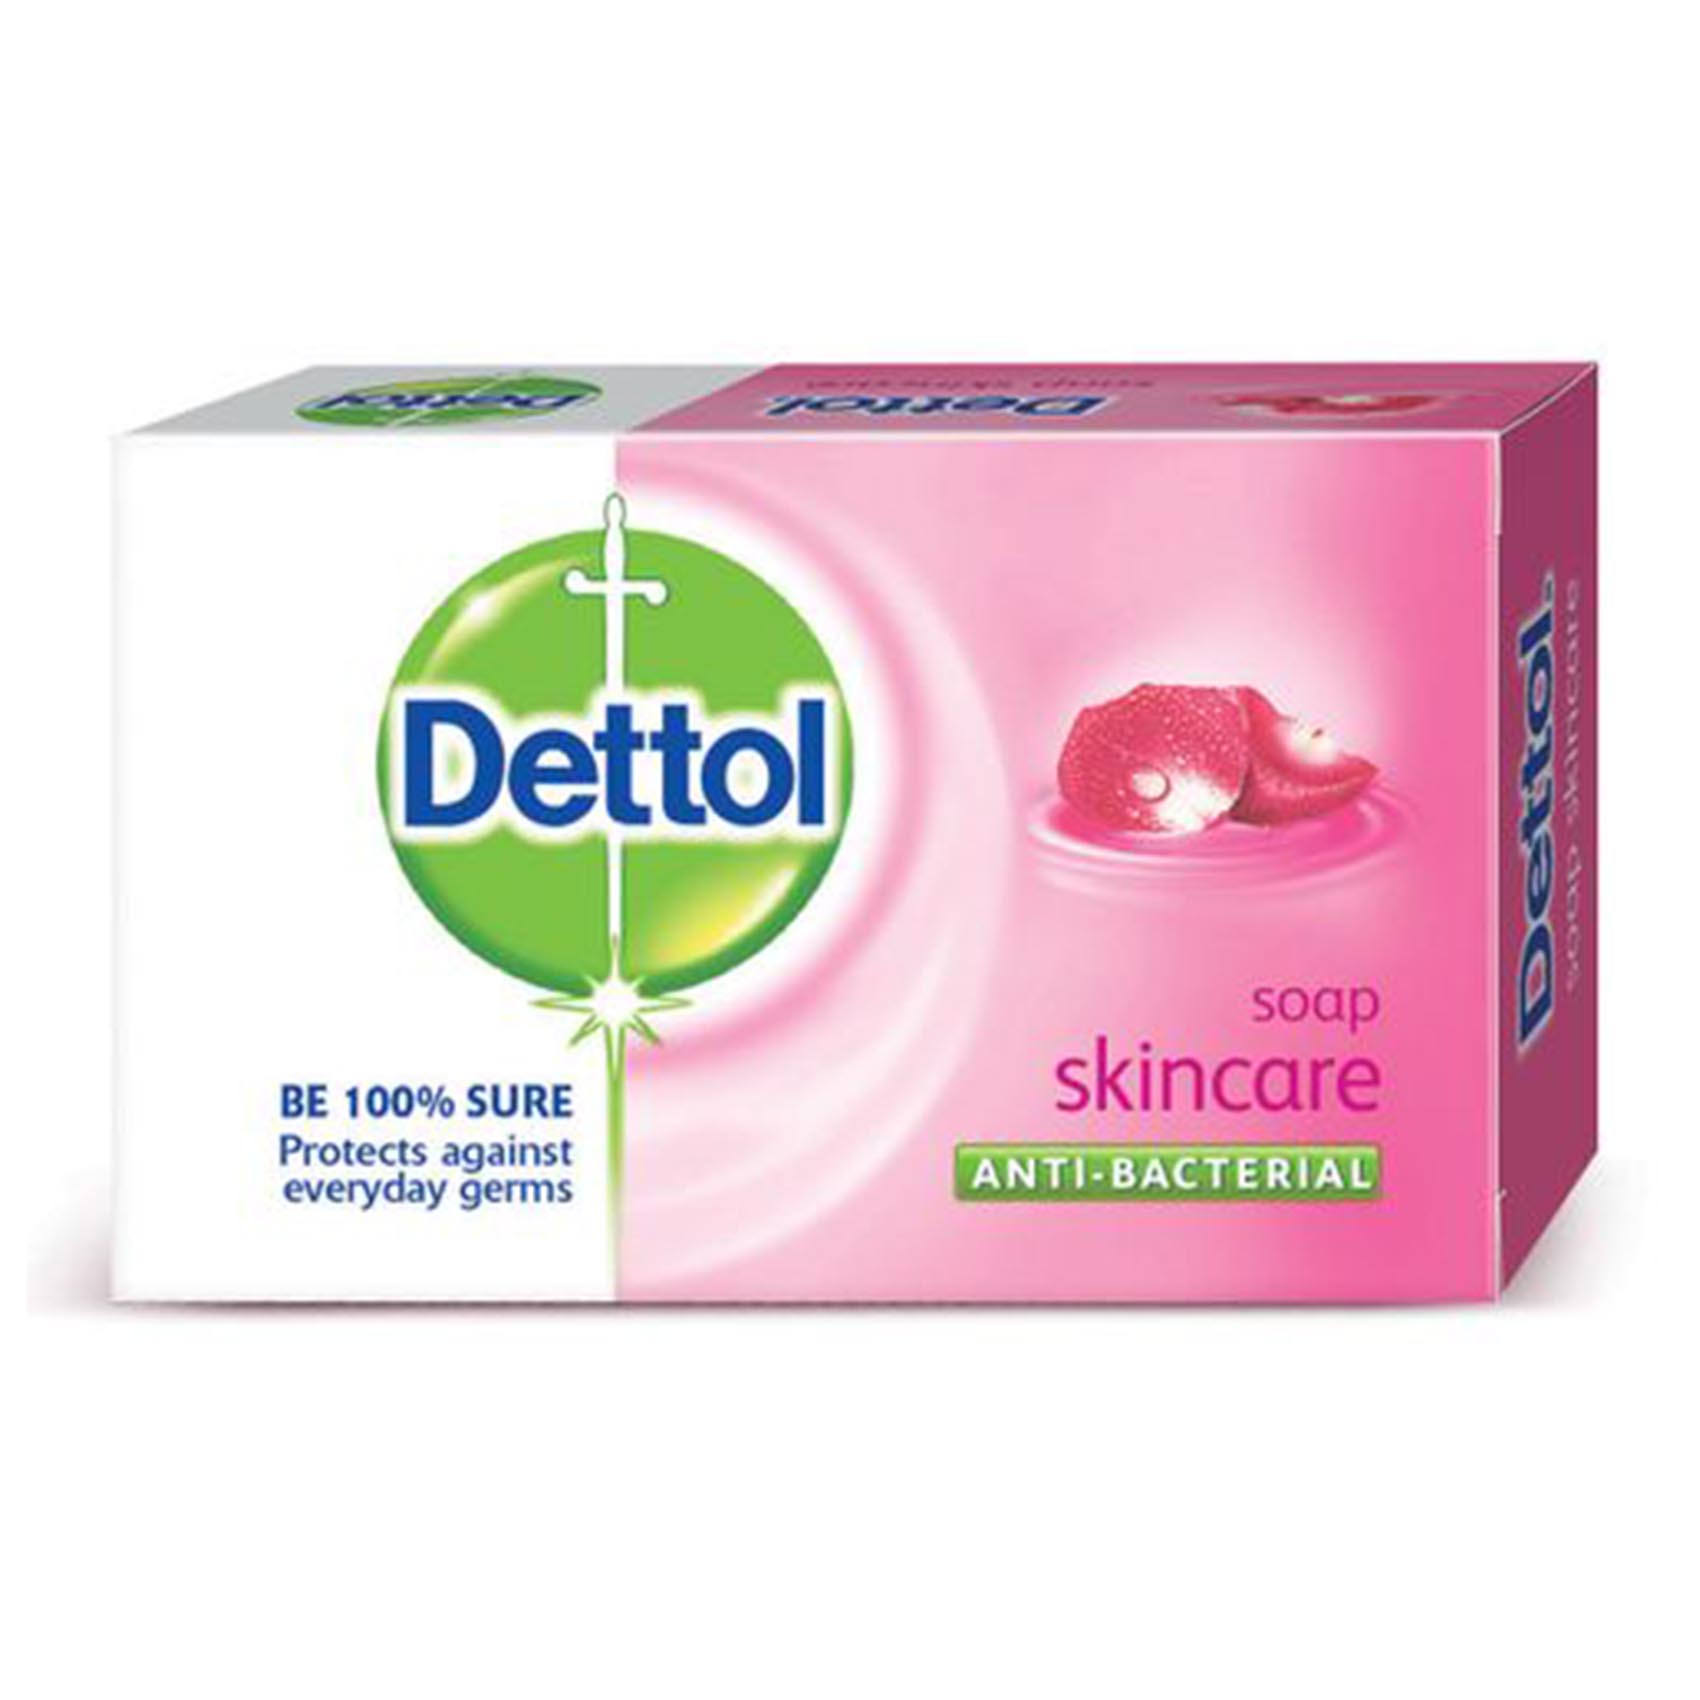 Dettol Bar Soap Skincare 175G